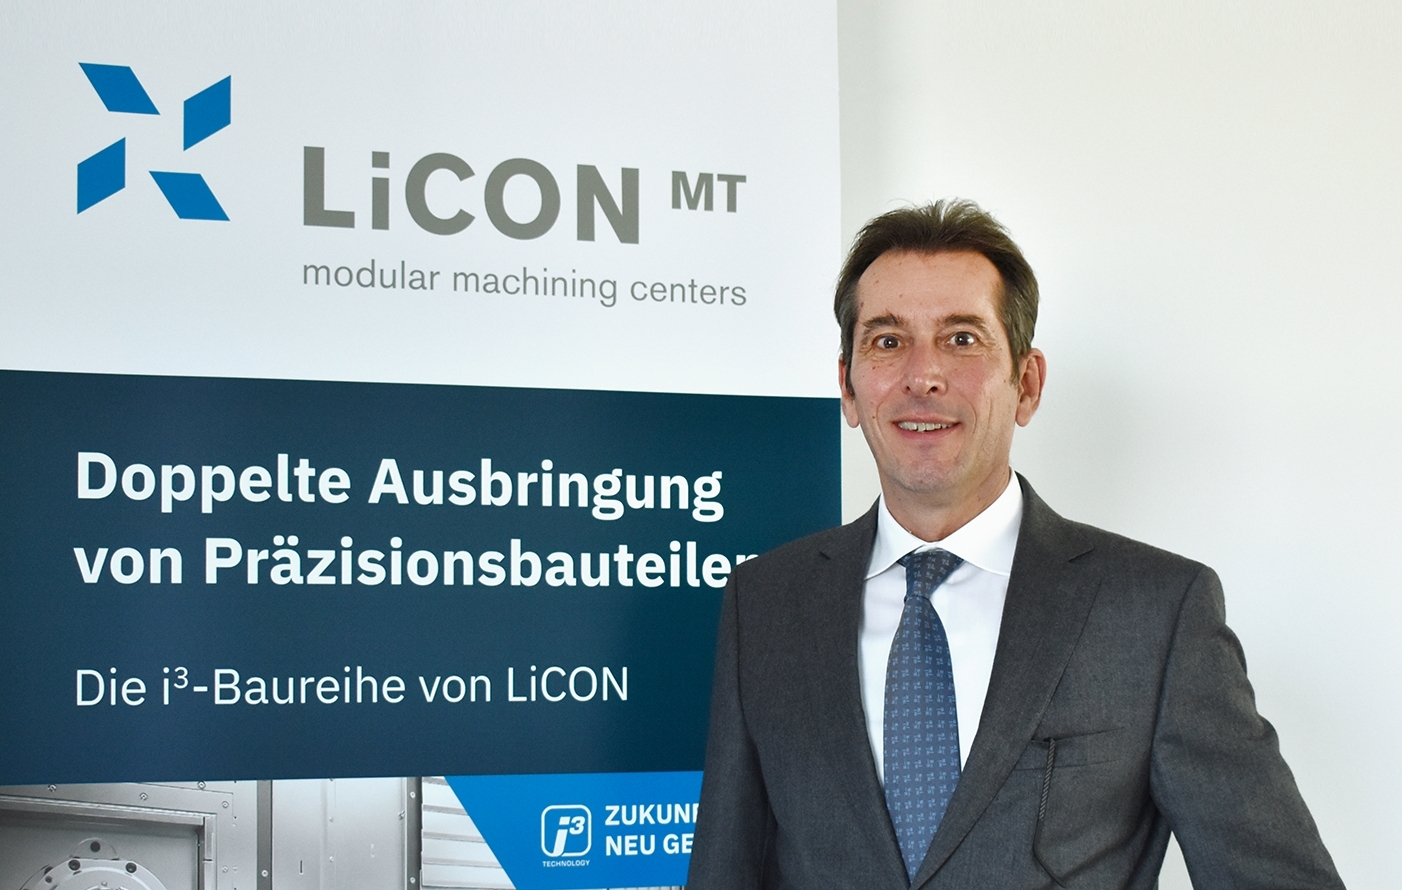 Matthias Maier, neuer Licon MT Vertriebsleiter, setzt den Fokus auf die globale Wachstumsstrategie des Unternehmens. 